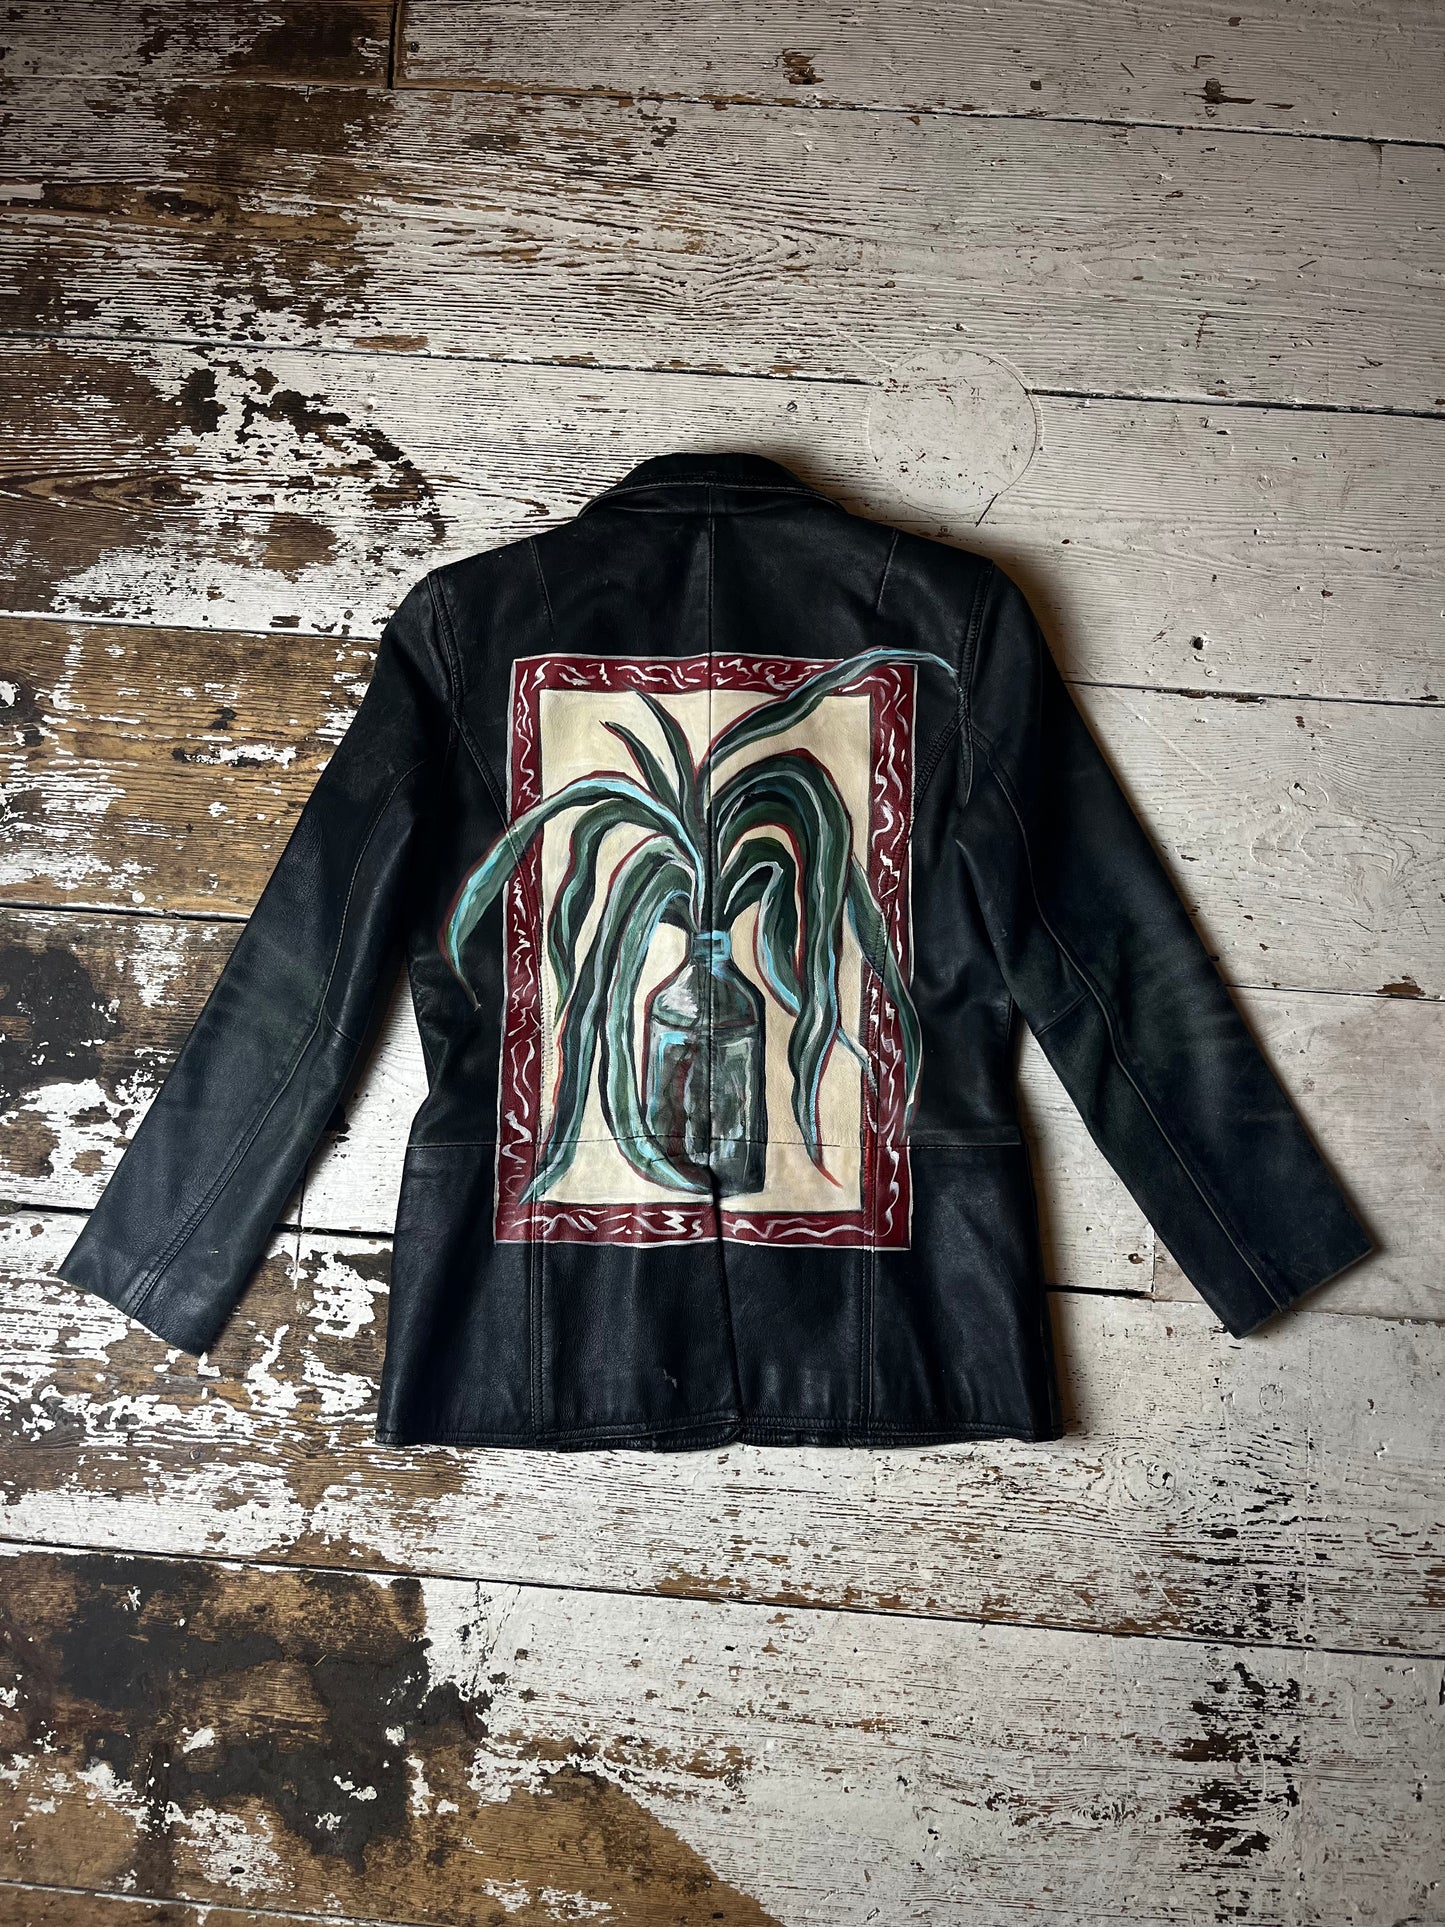 Vintage “Framed and Bottled” leather jacket by Anna Floto